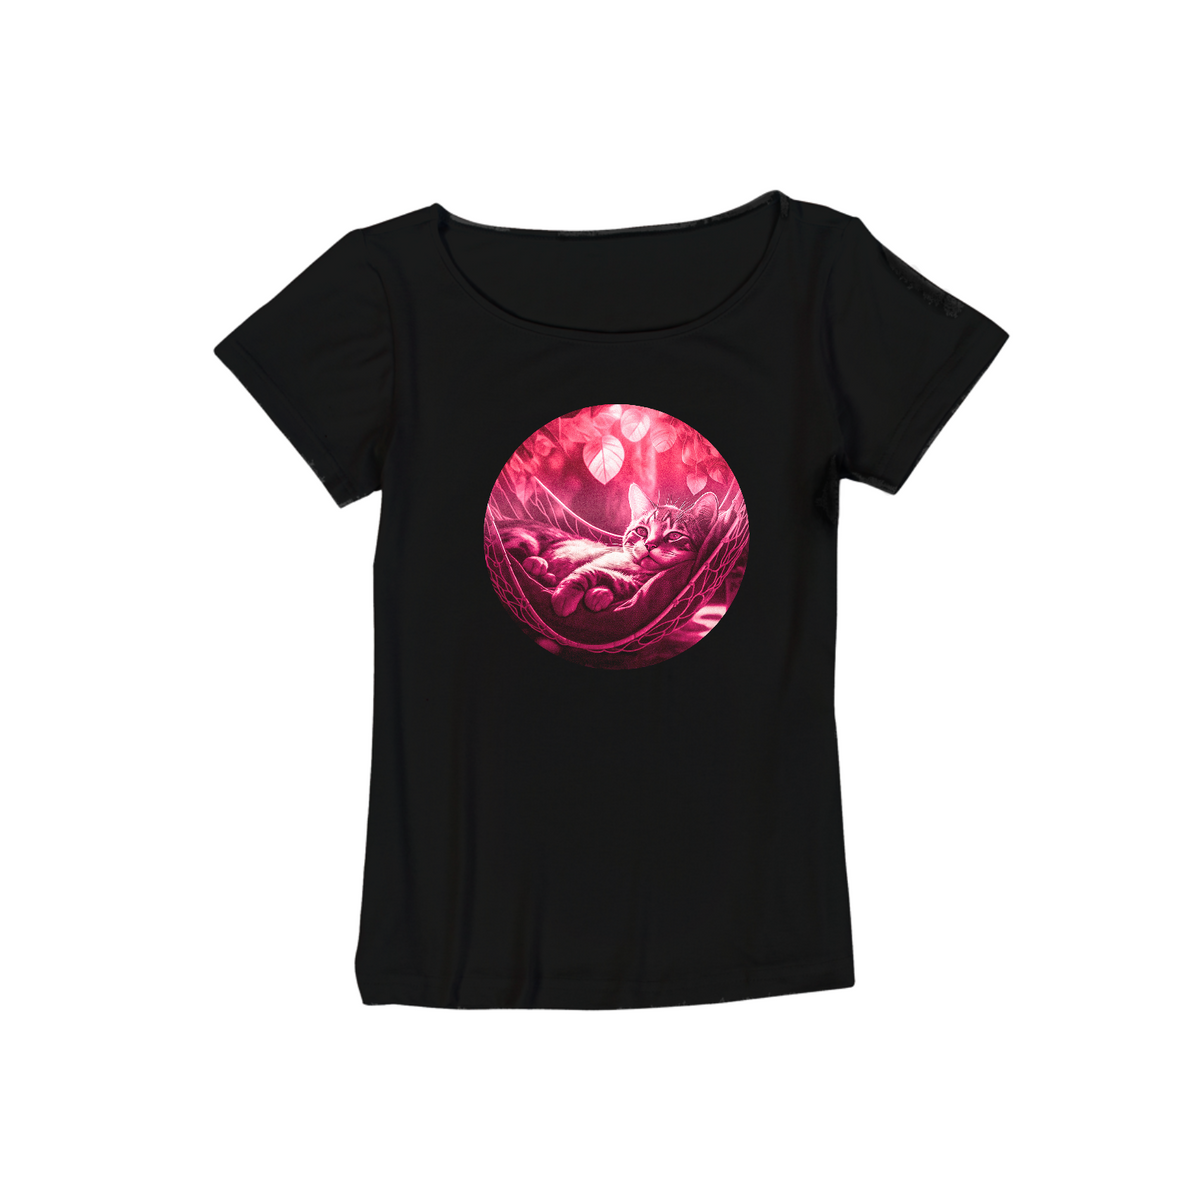 Nome do produto: T-shirt Canoa - viscolycra feminina, produto com malha ecológica